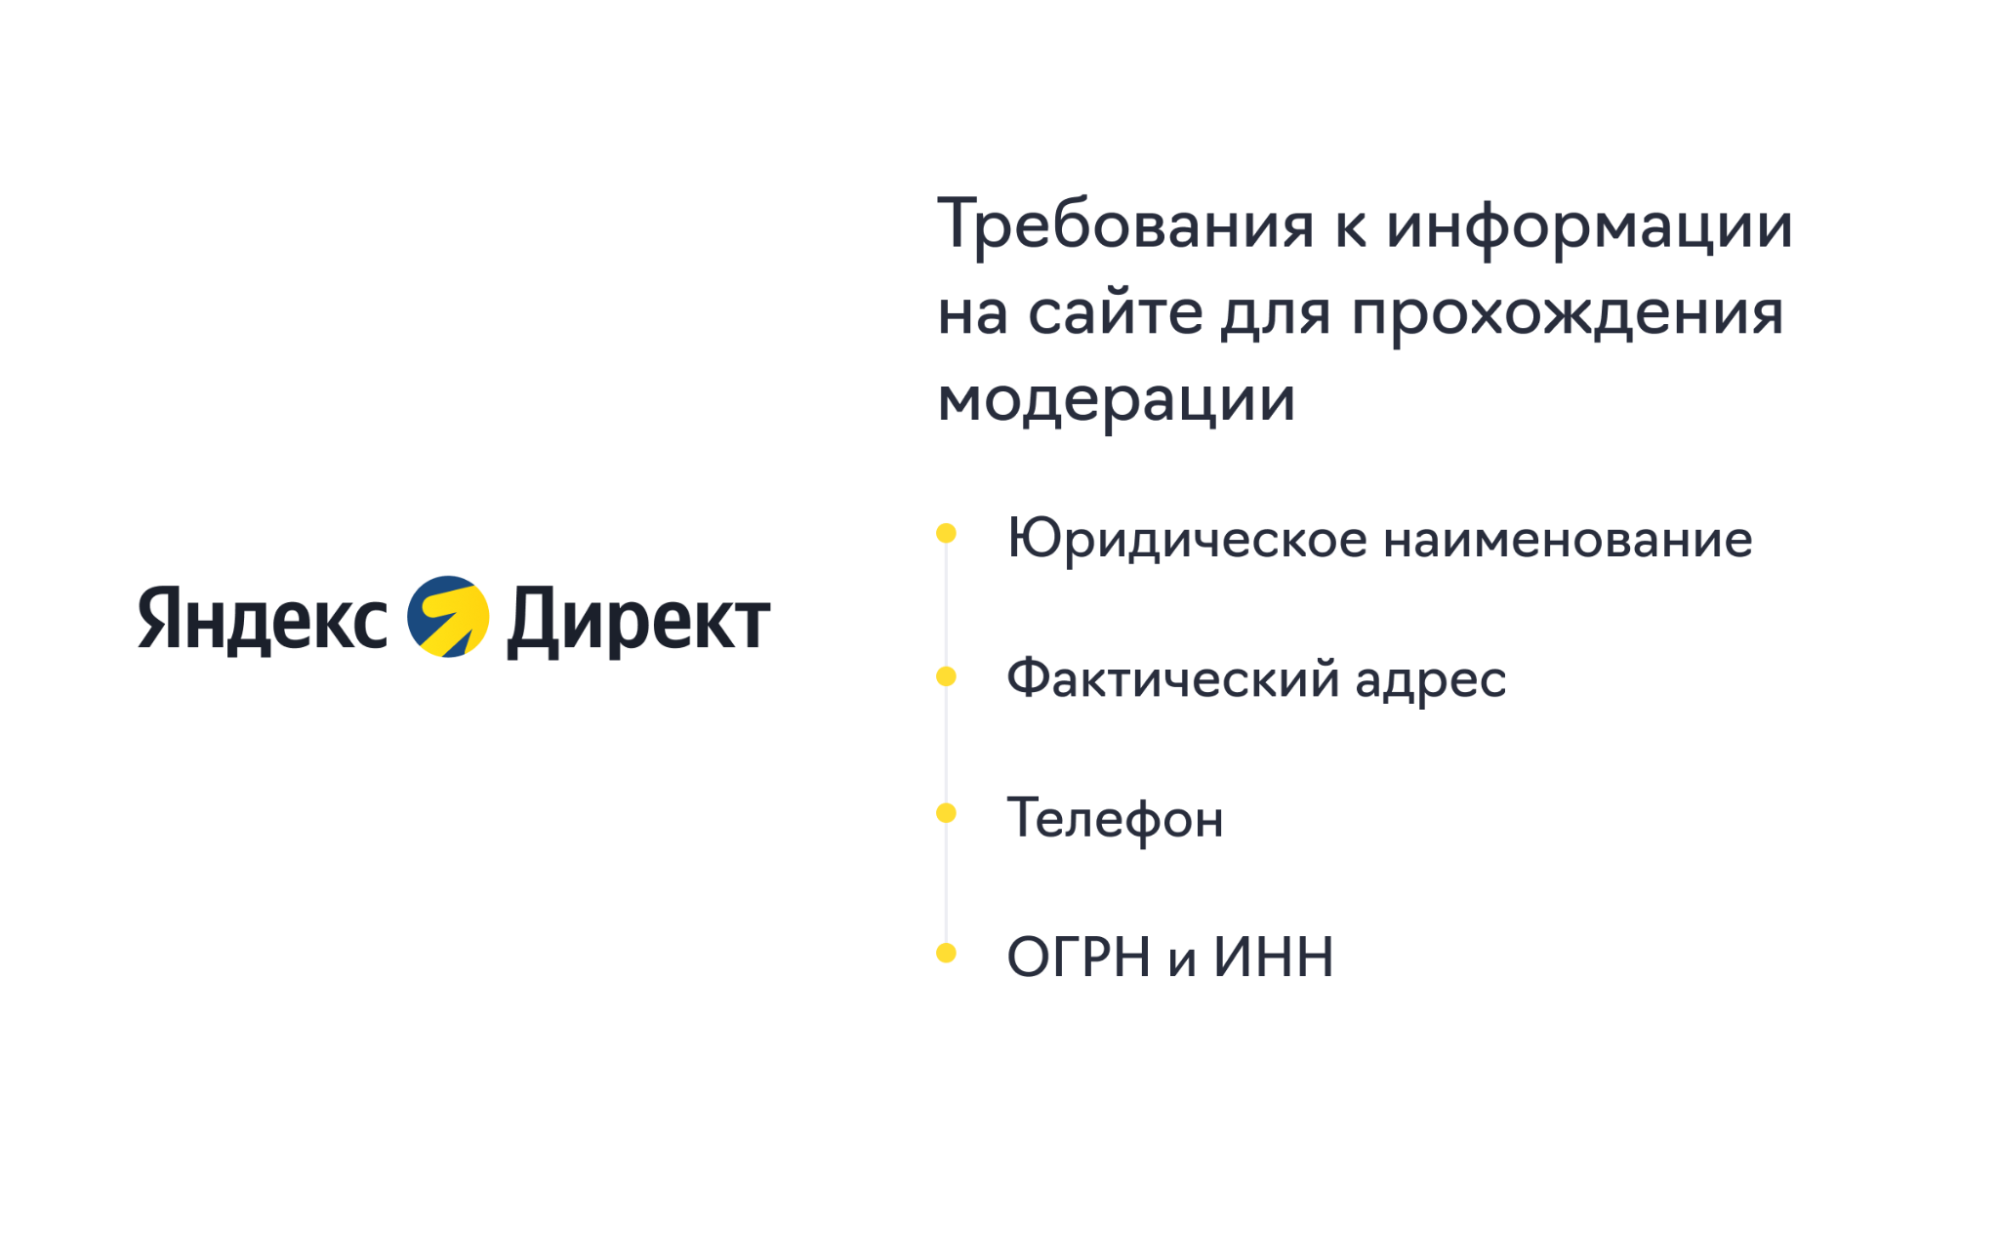 20 хороших курсов по Яндекс Директ с бесплатным и платным обучением в году